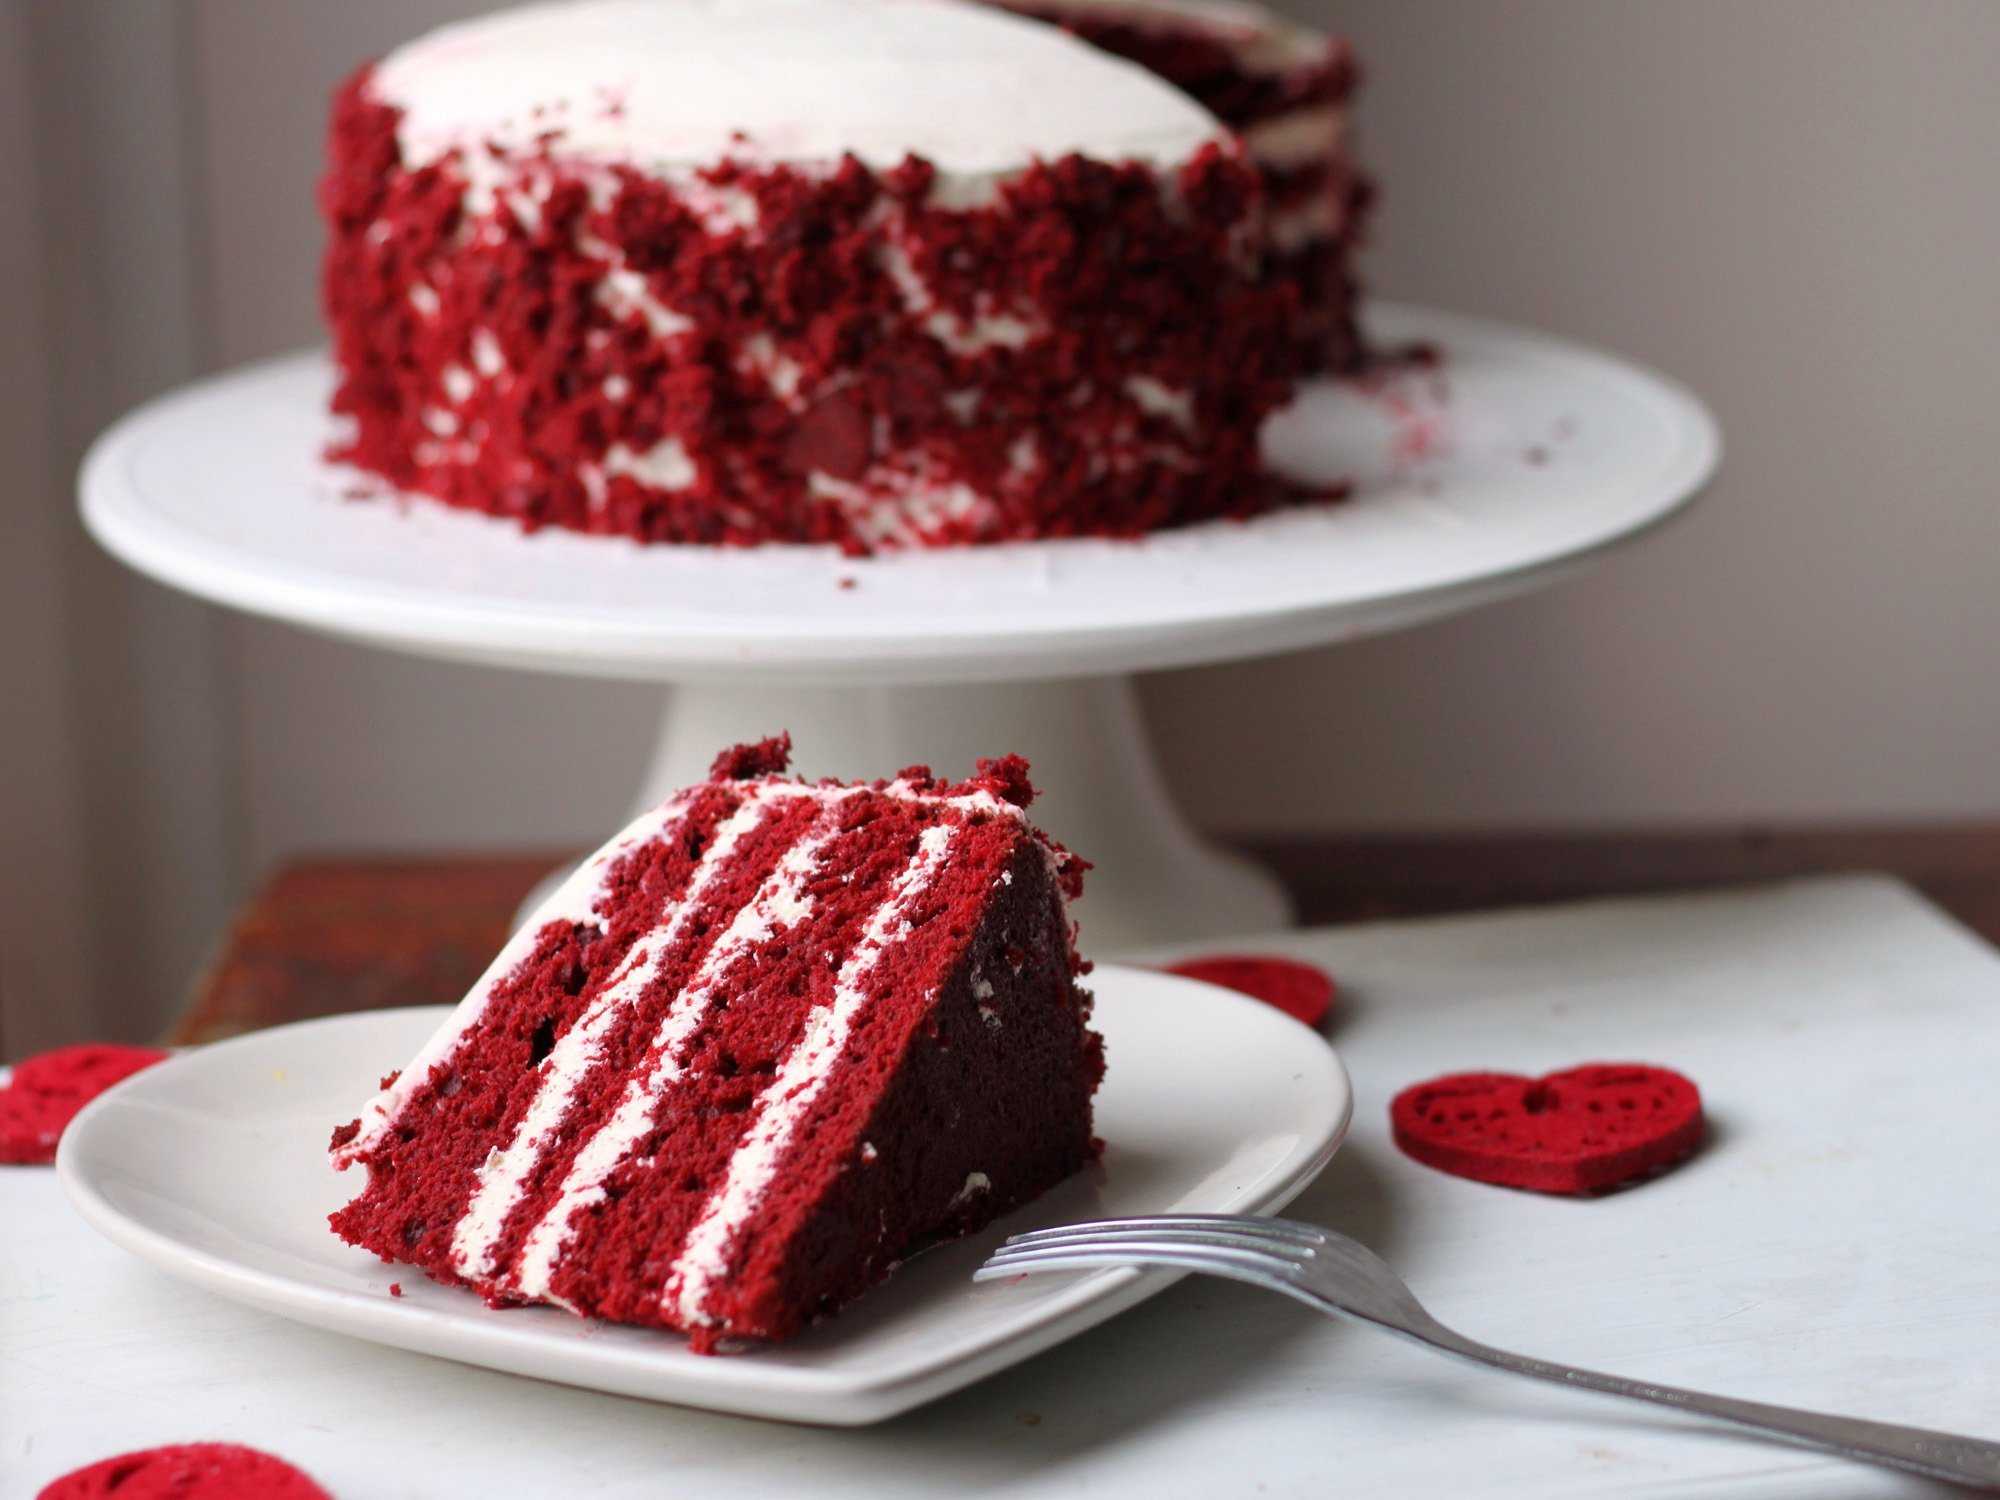 Пошаговый рецепт нежного торта красный бархат с фото